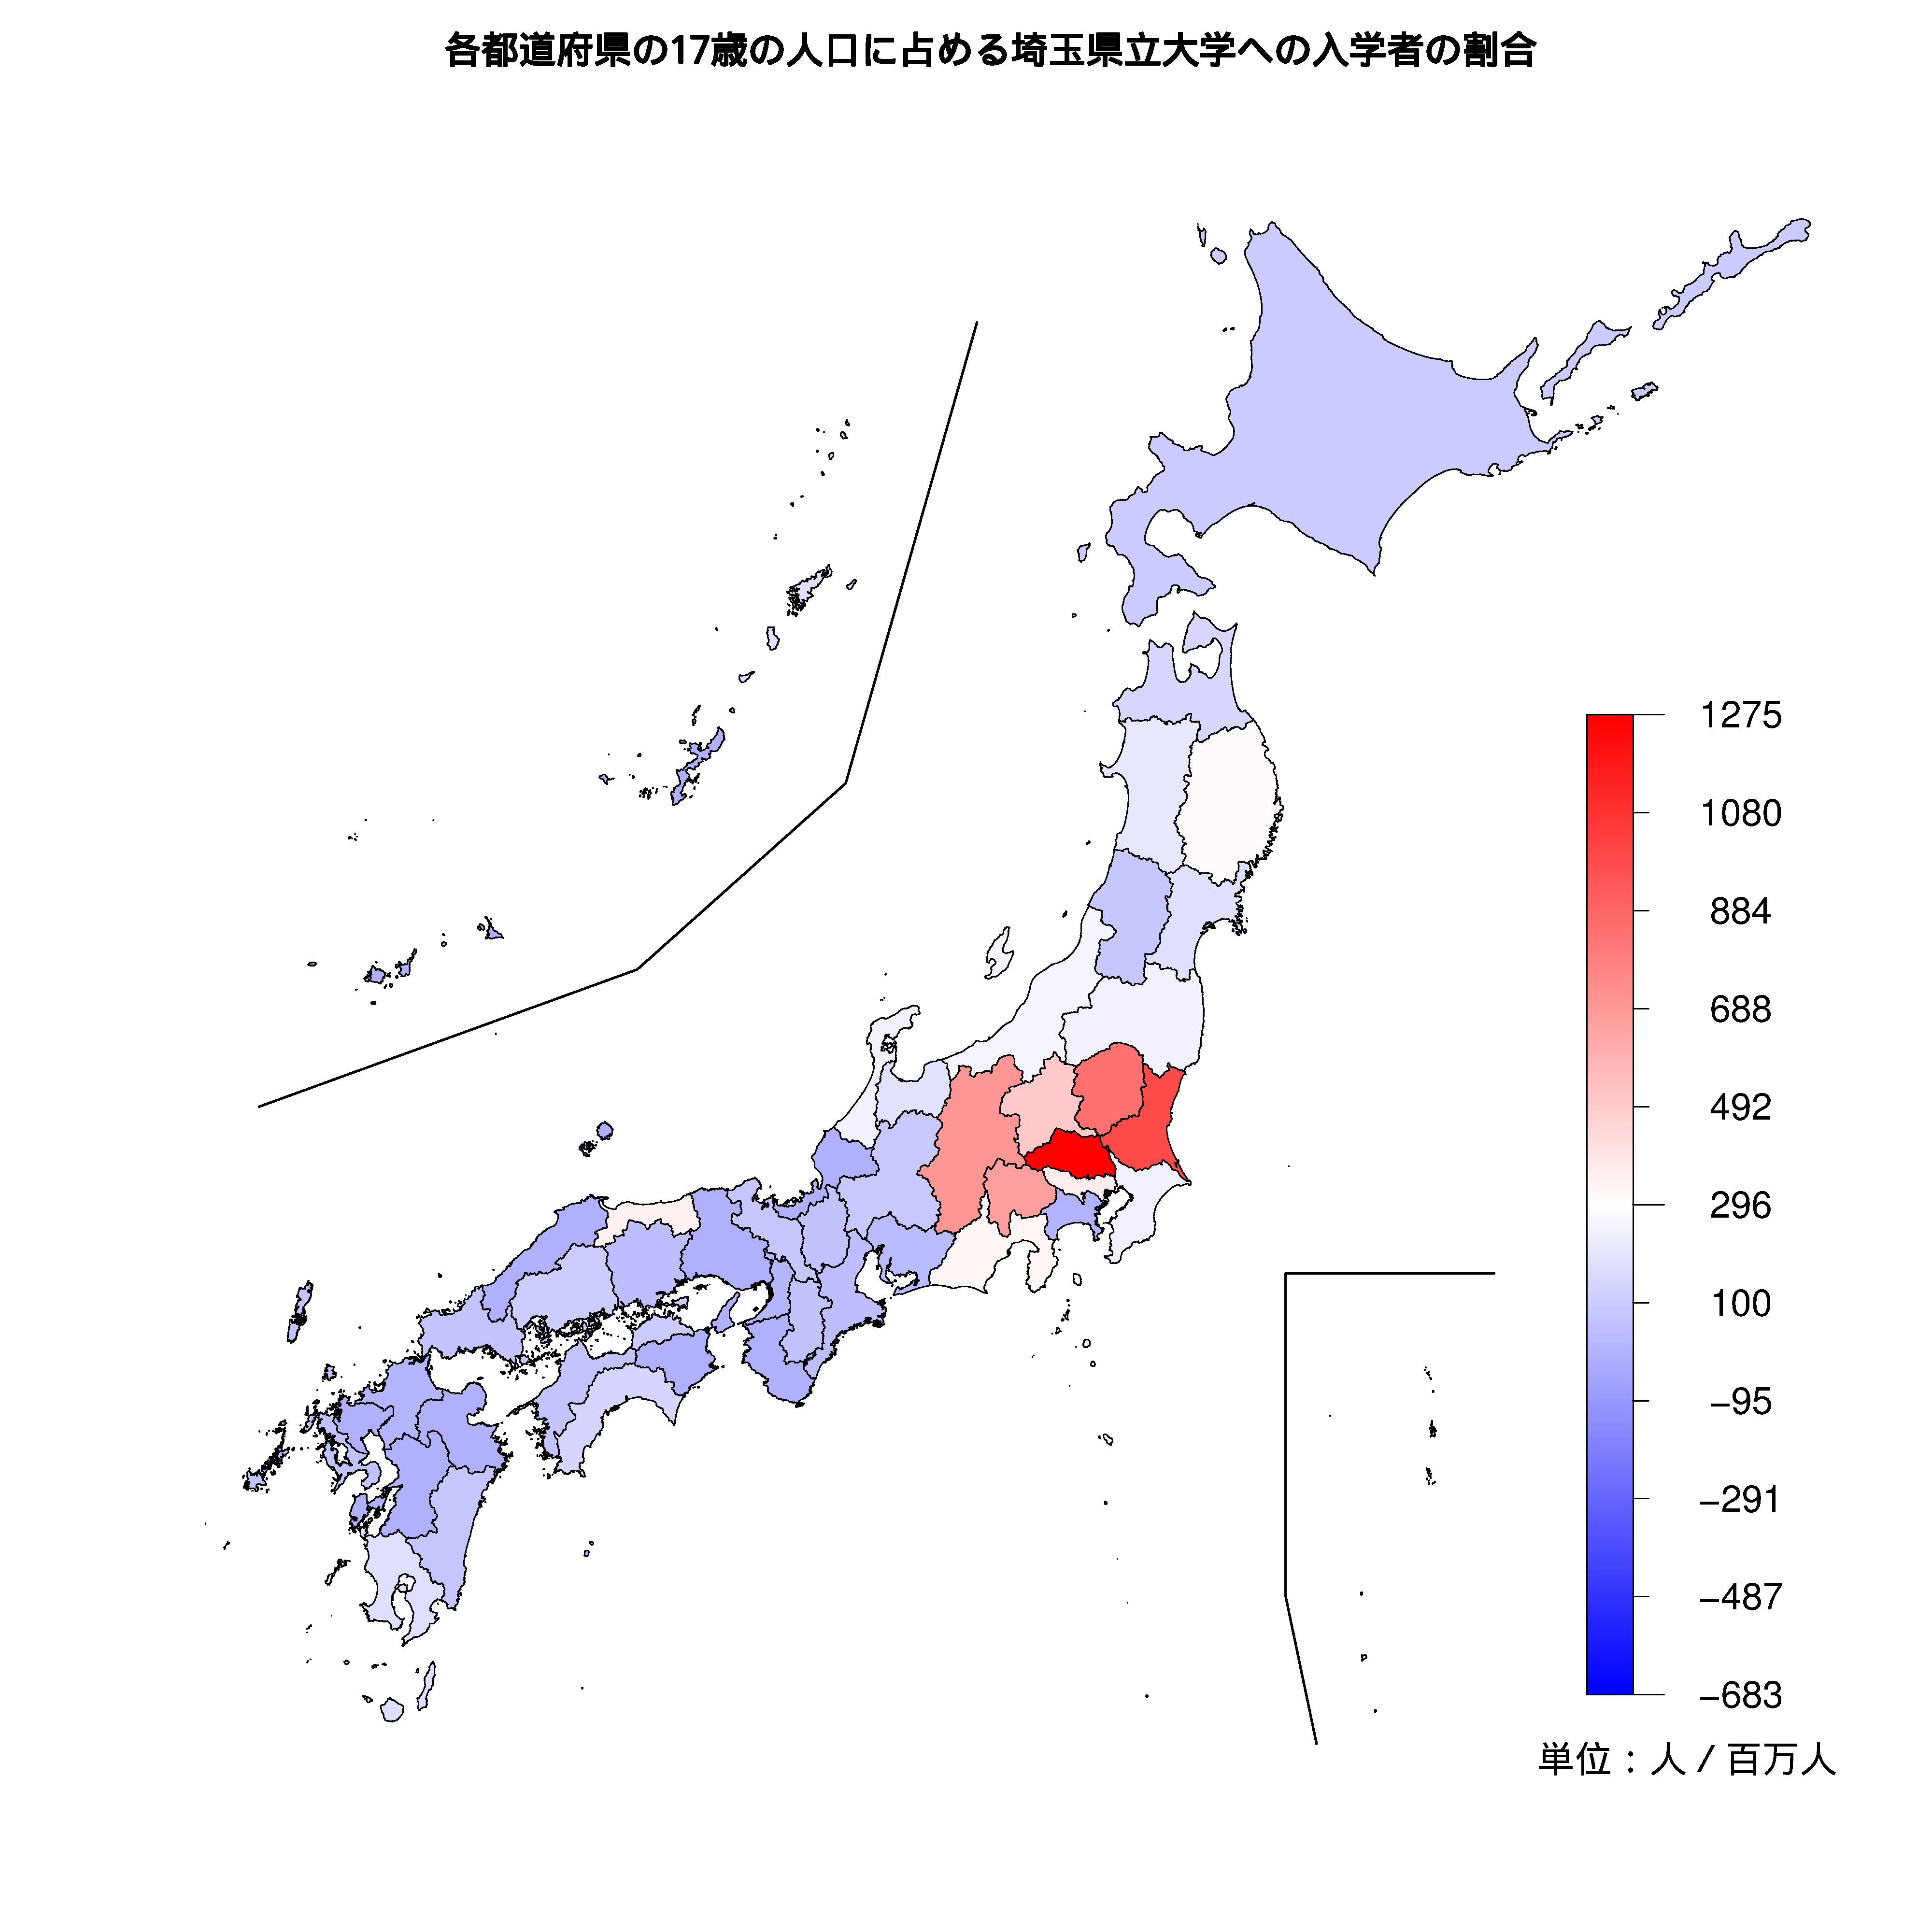 埼玉県立大学への入学者が多い都道府県の色分け地図